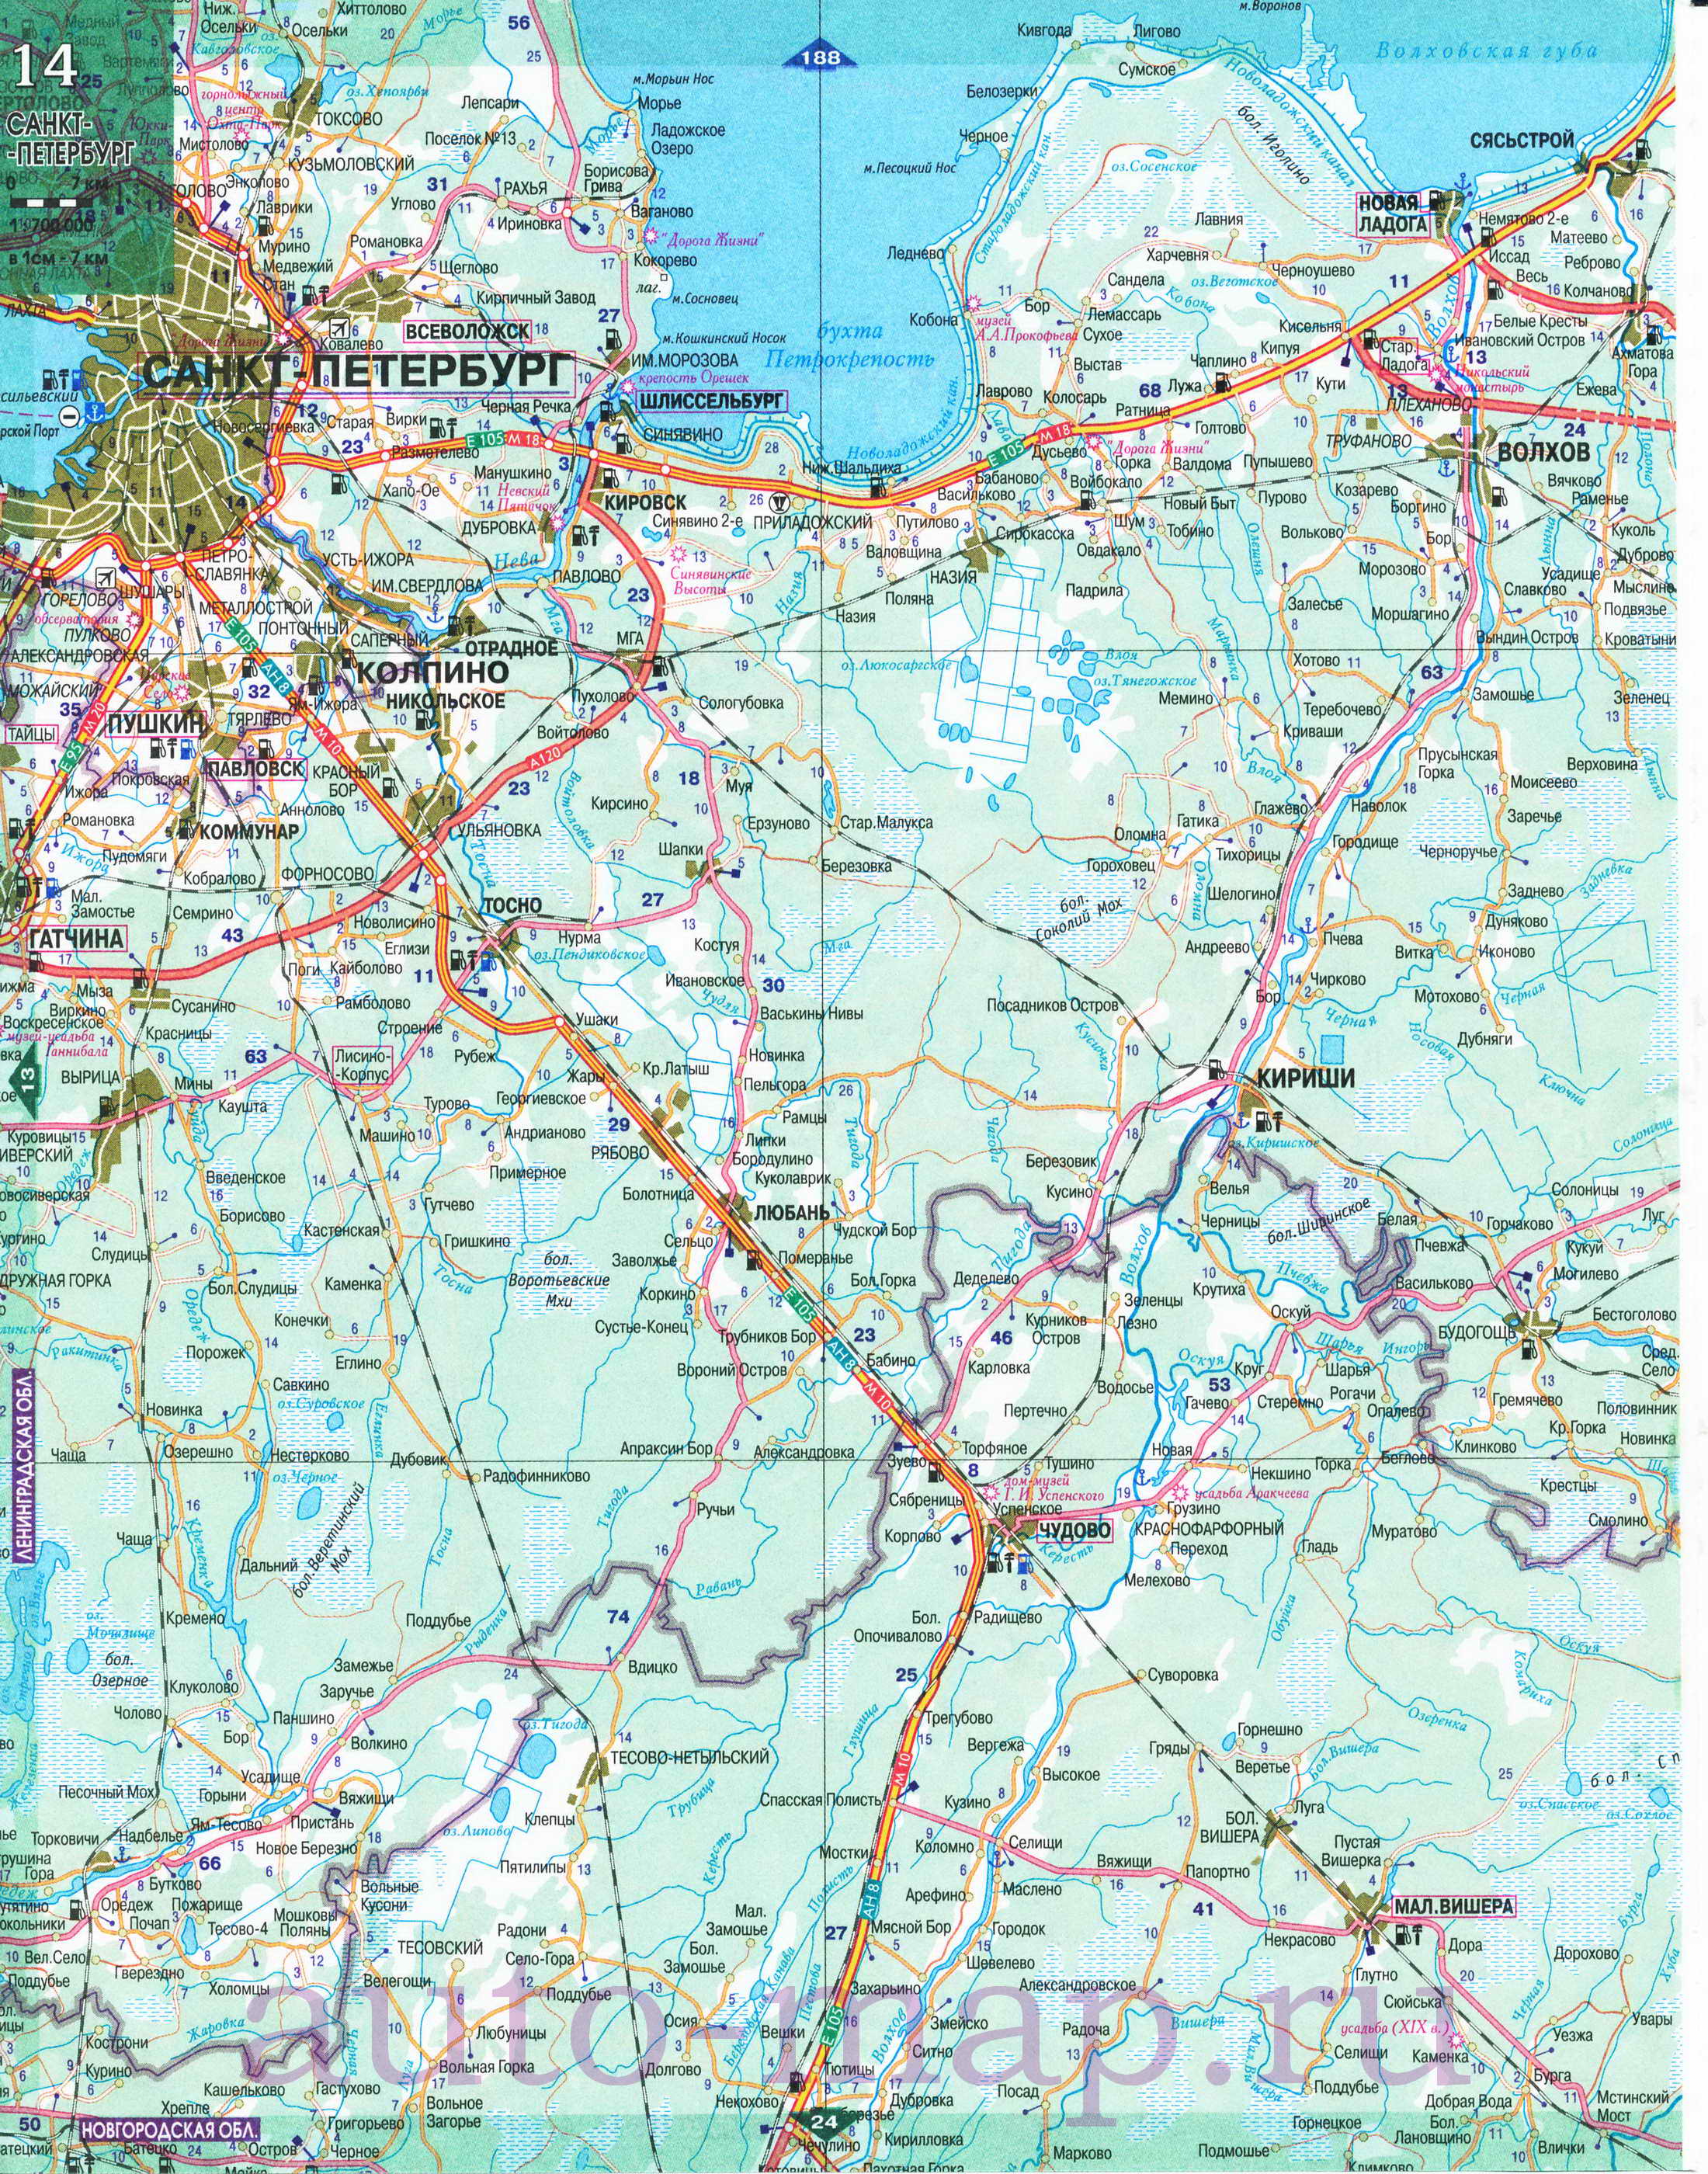 Карта Северо-Западного региона России. Подробная крупномасштабная карта автодорог Северо-Запада России, C0 - 